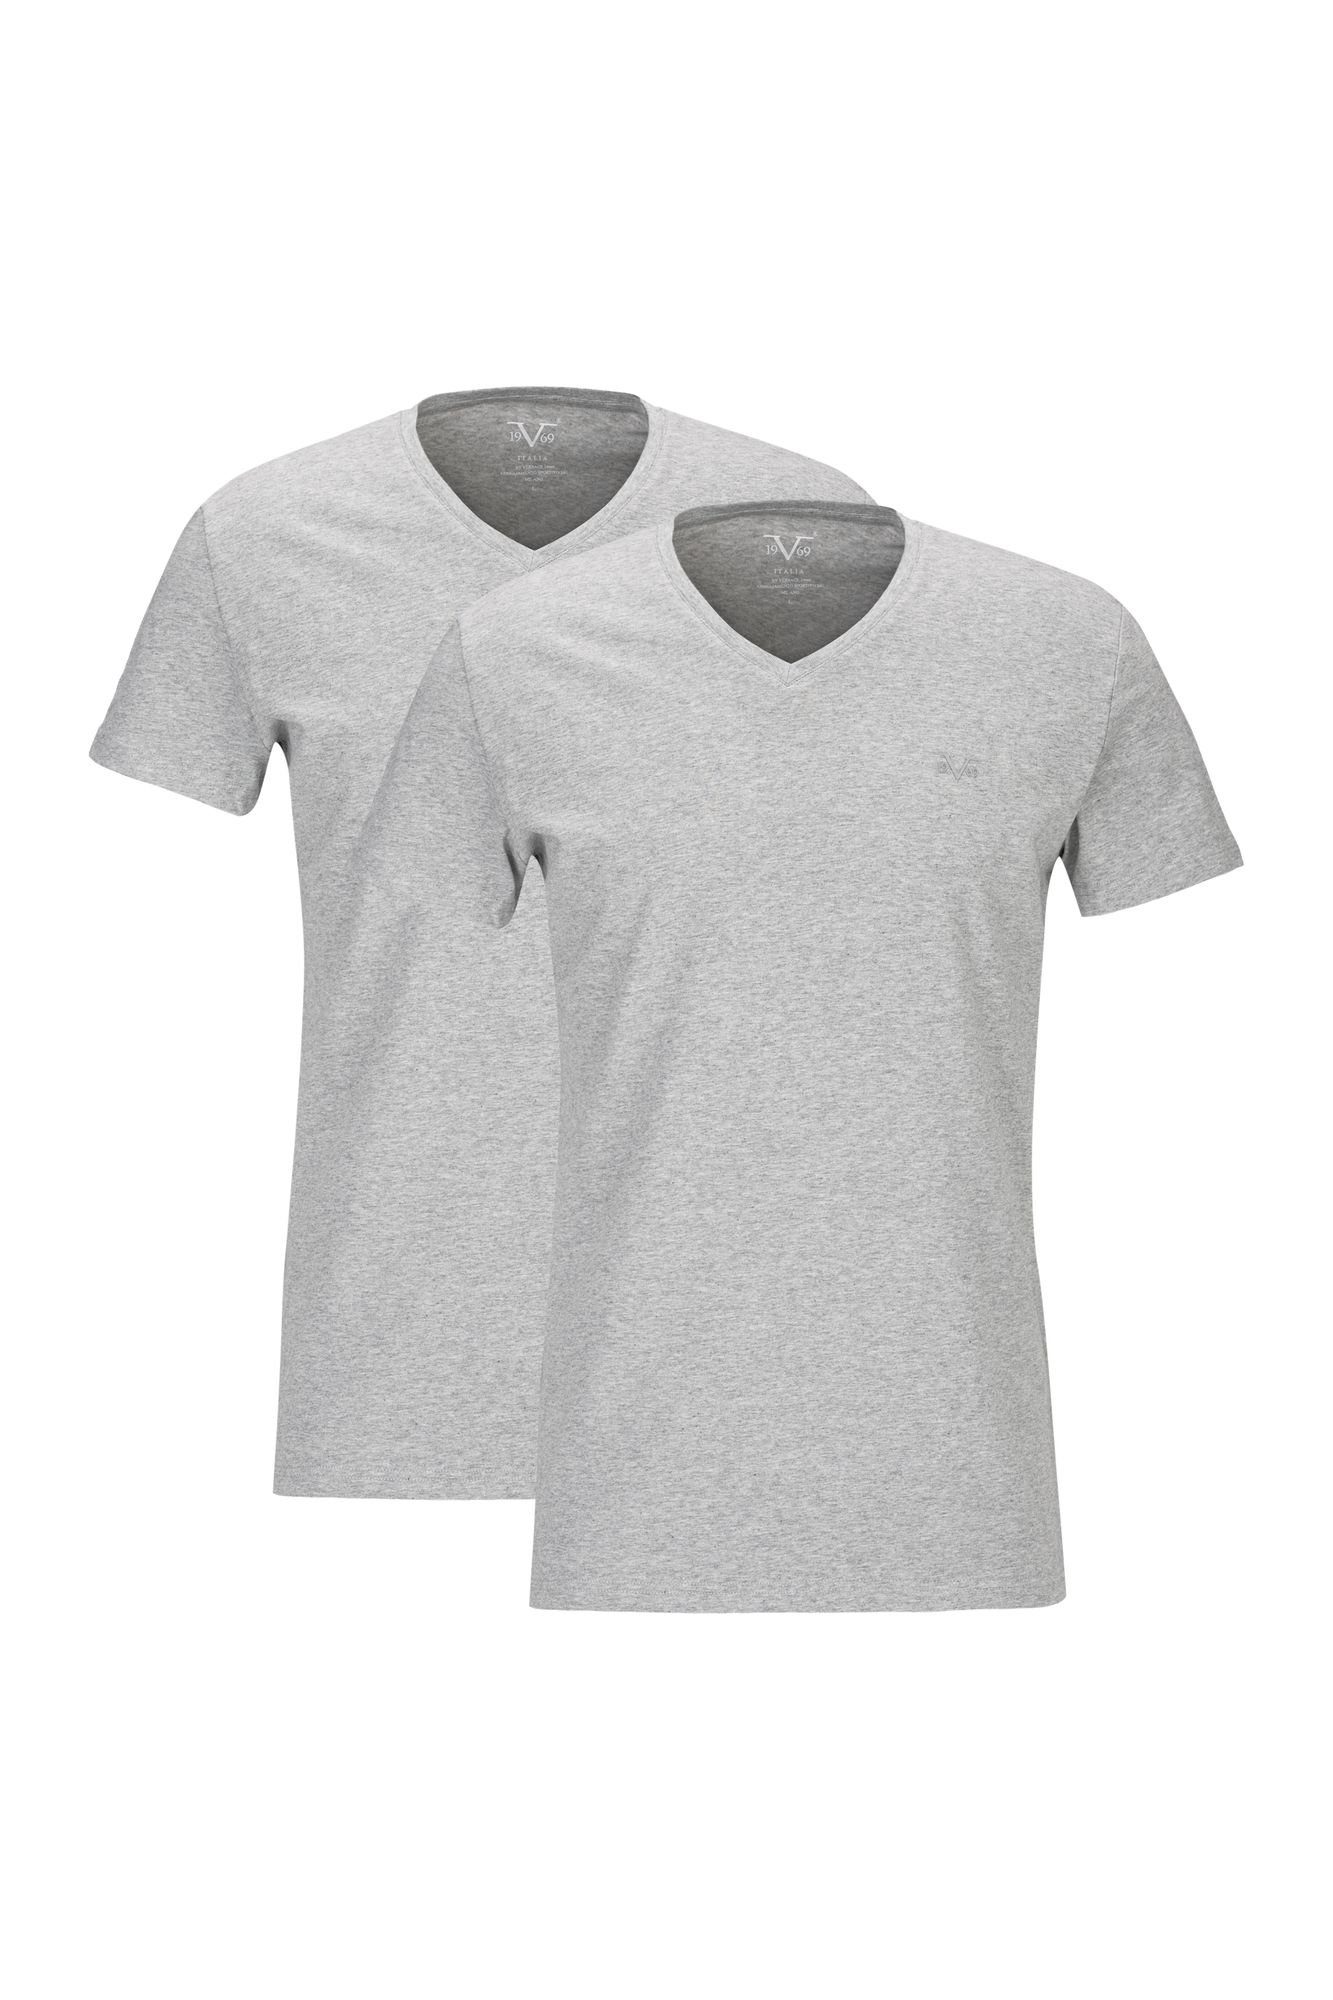 19V69 Italia by Logo kleinem auf Versace mit Herren Ton-in-Ton einem Kurzarm T-Shirt Unterziehshirt Unterhemd mit Brust grau V-Ausschnitt für der